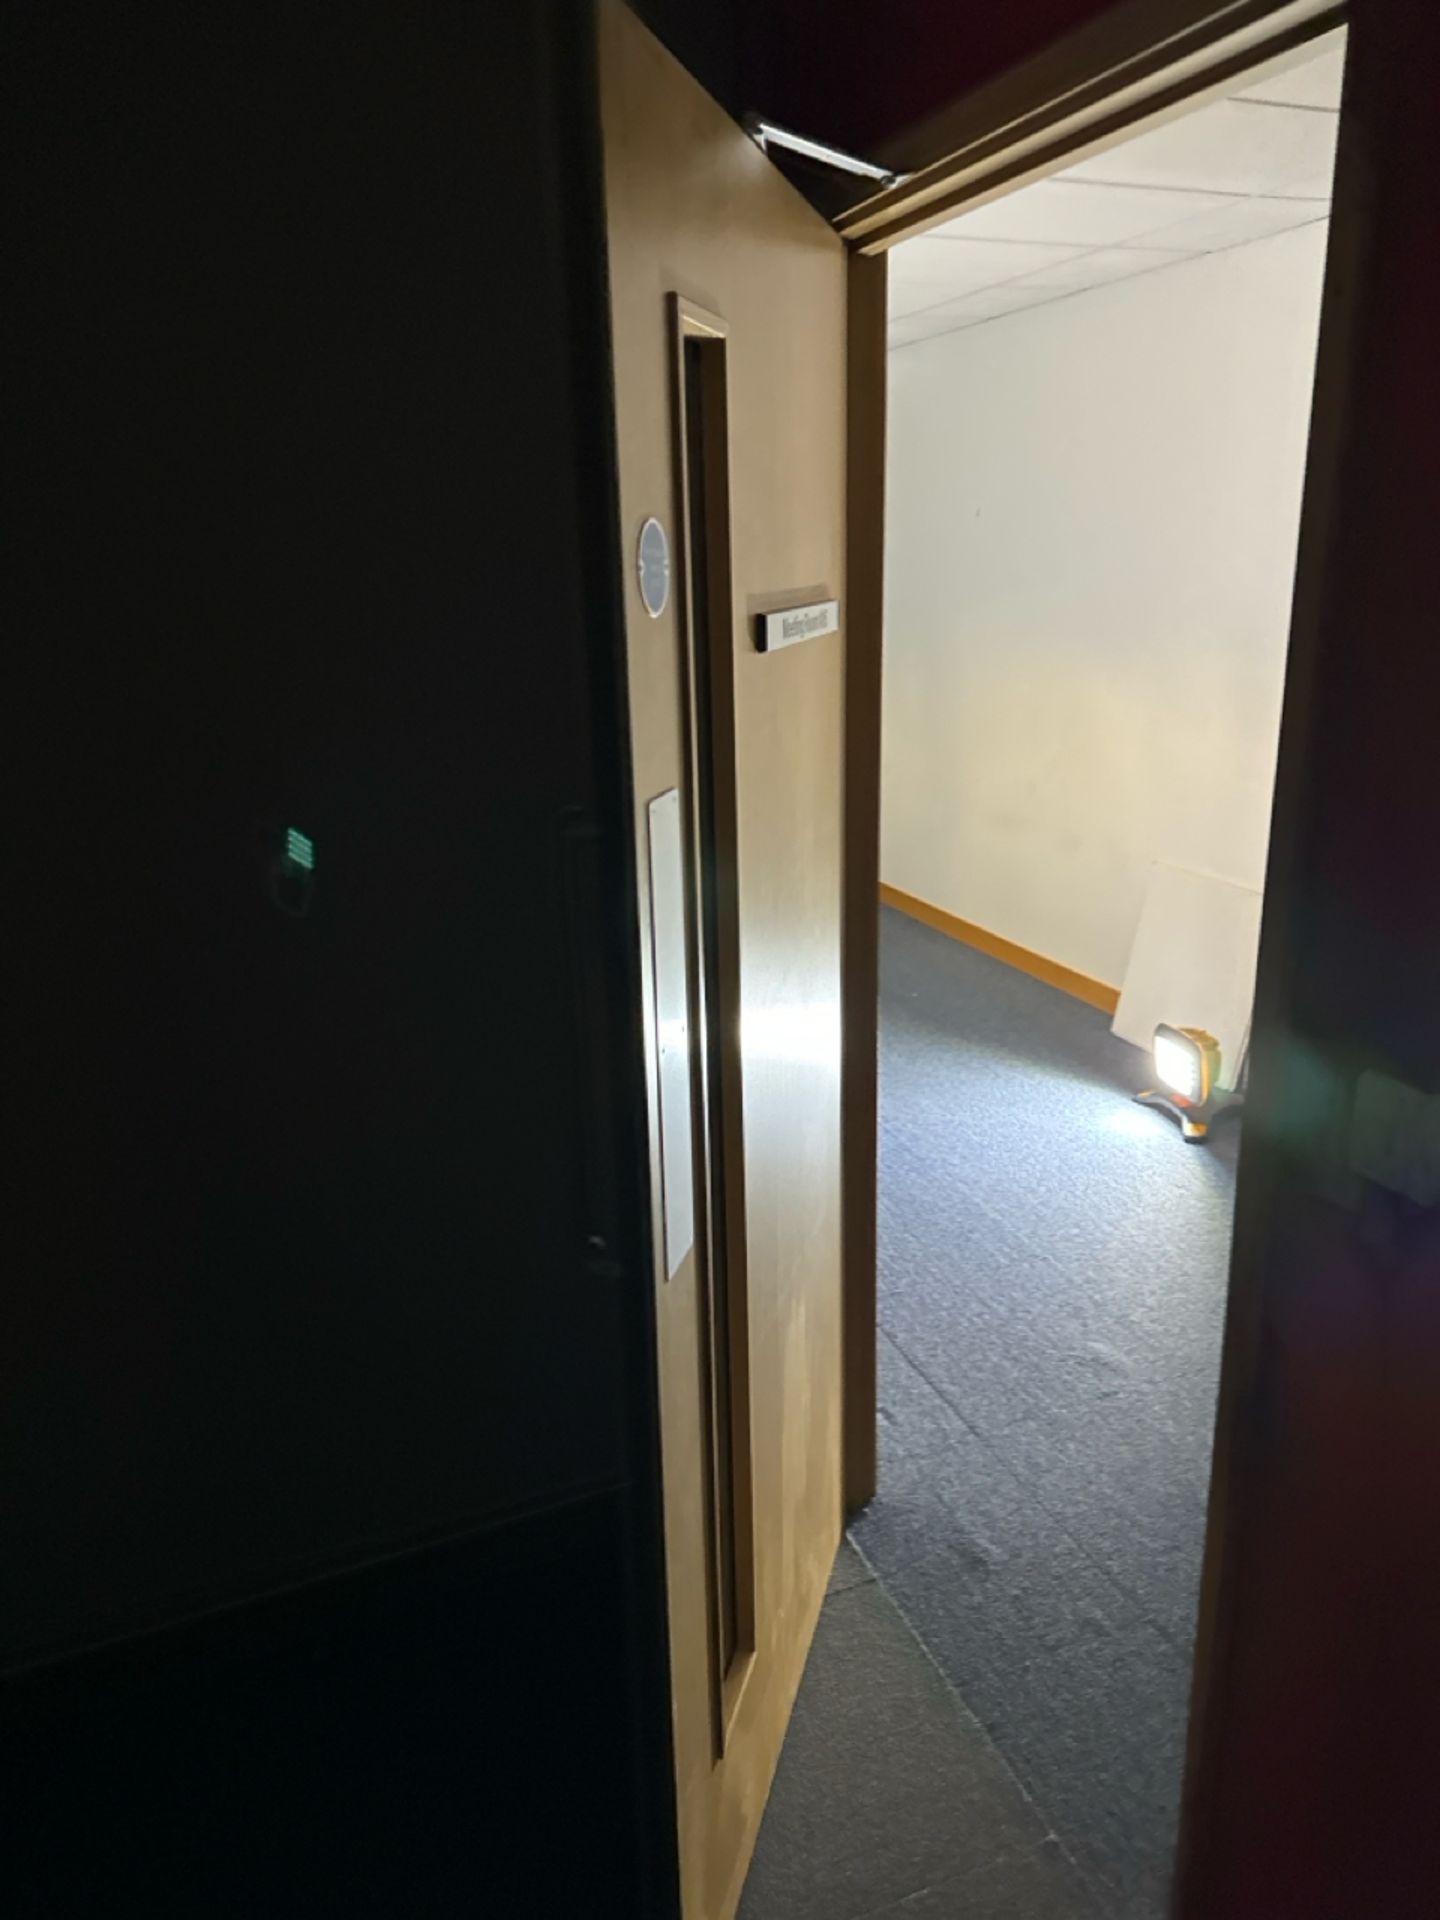 Single Fire Door - Image 2 of 2